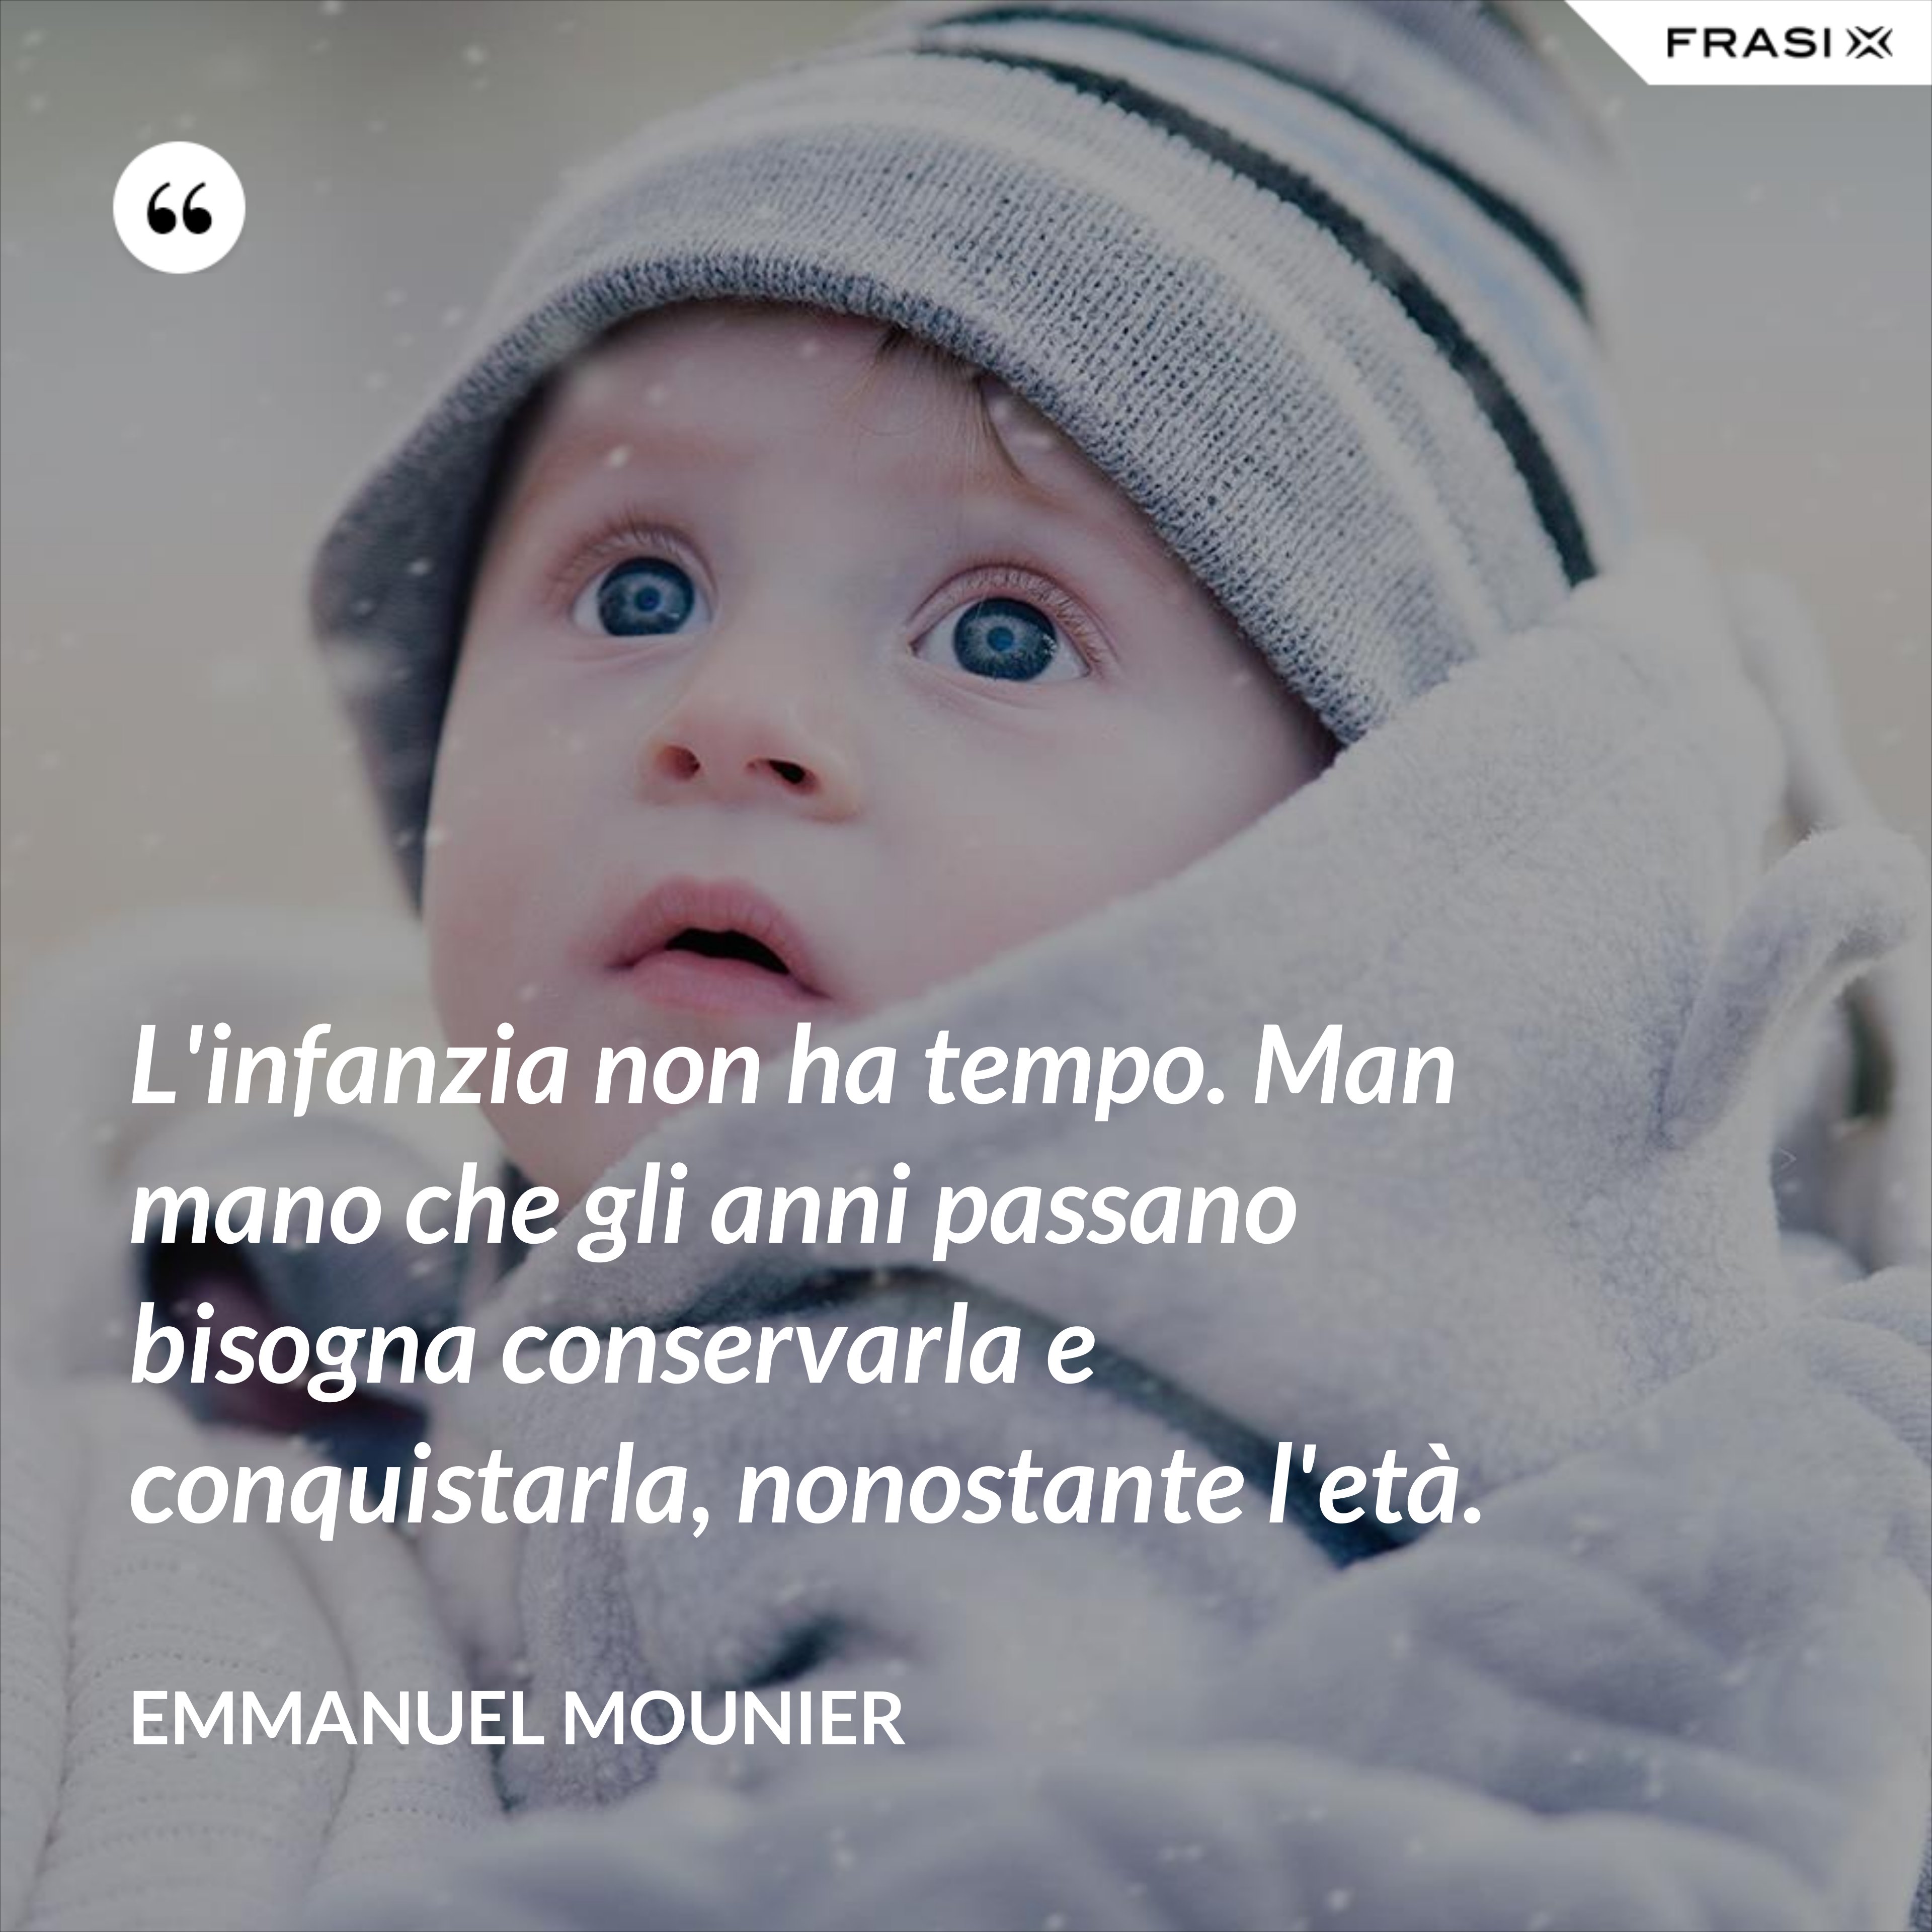 L'infanzia non ha tempo. Man mano che gli anni passano bisogna conservarla e conquistarla, nonostante l'età. - Emmanuel Mounier